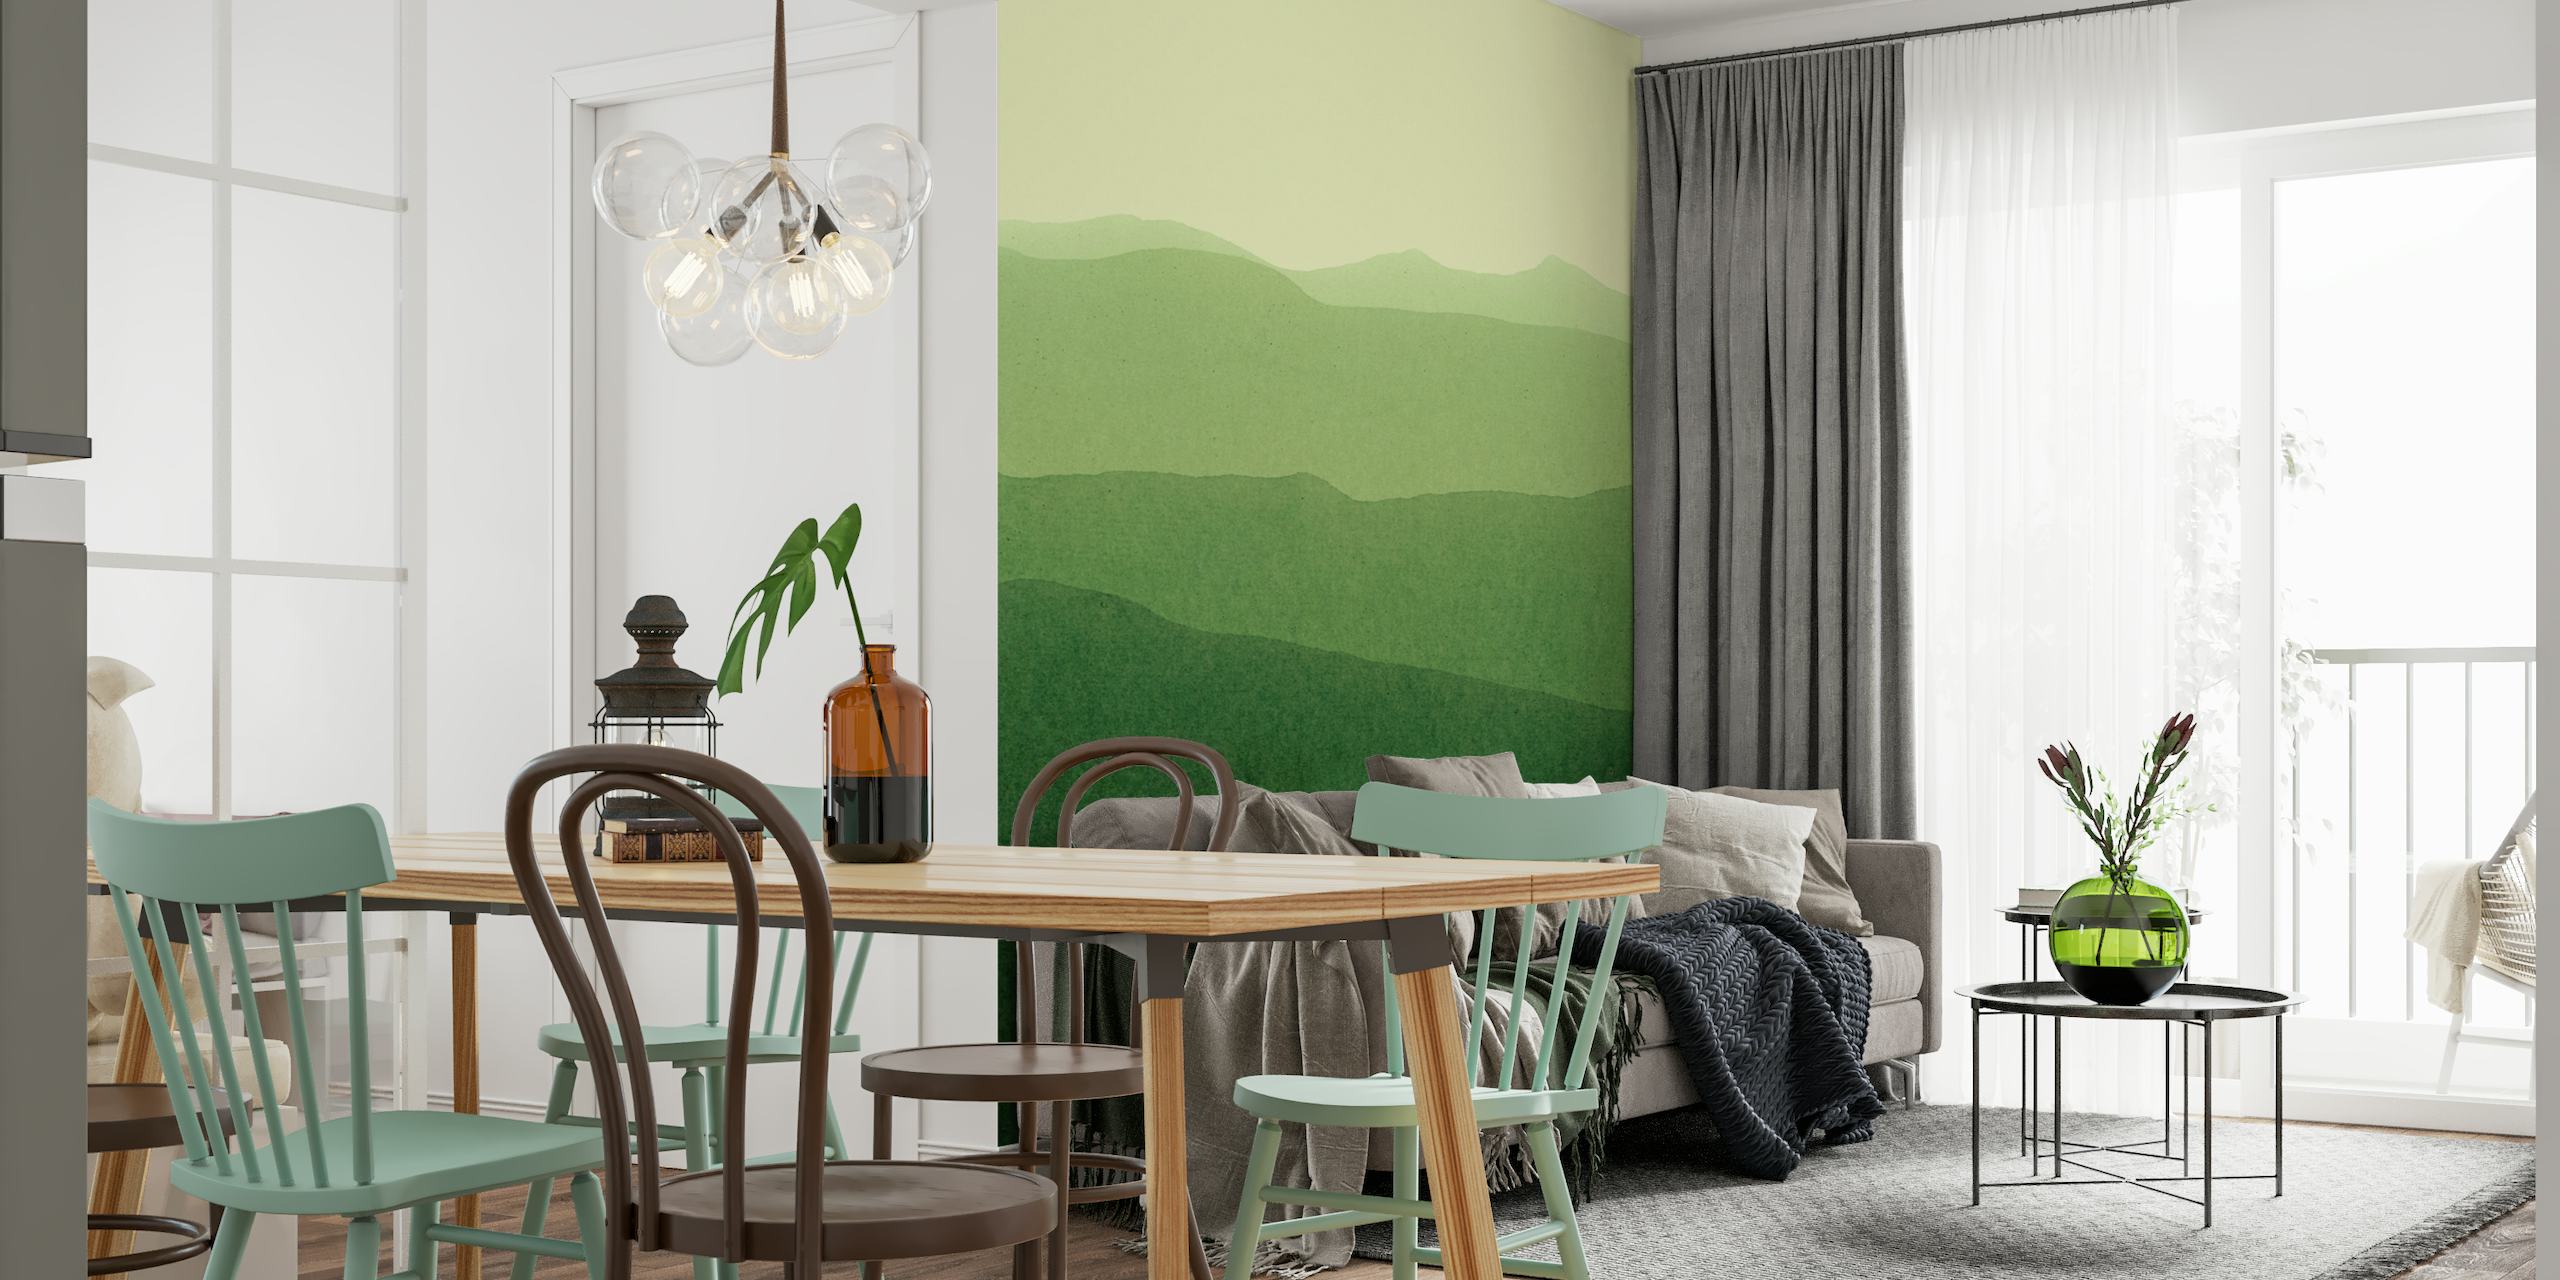 Stiliseret landskabsvægmaleri med grønne gradienter, der viser bølgende bakker